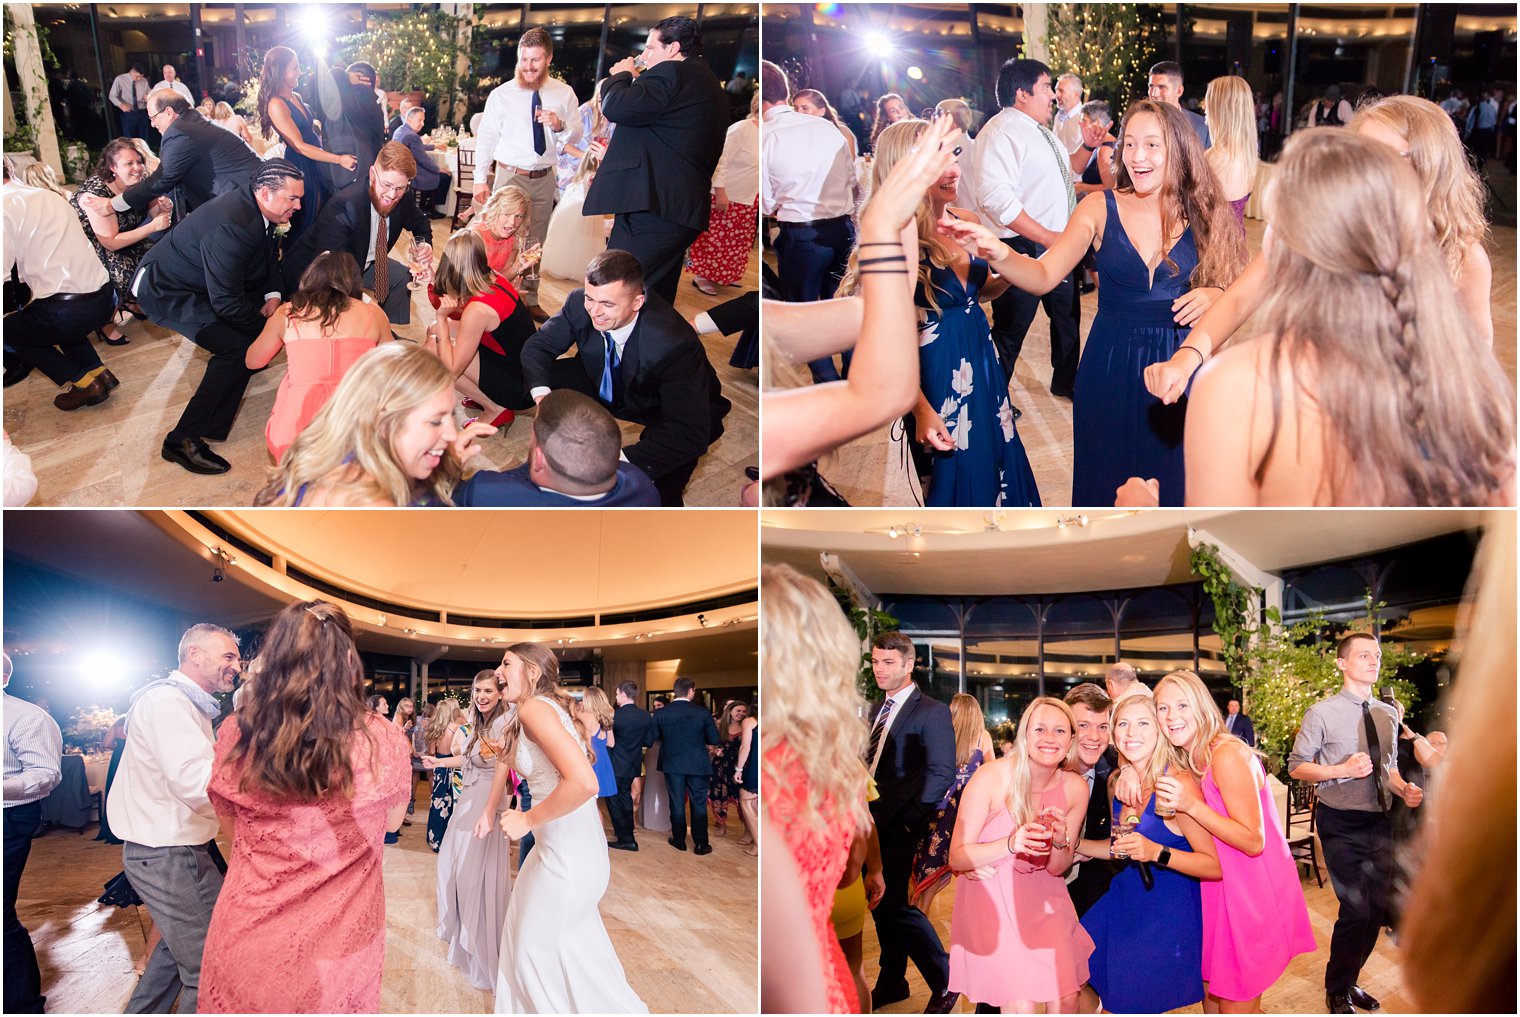 dancing at Jasna Polana wedding reception